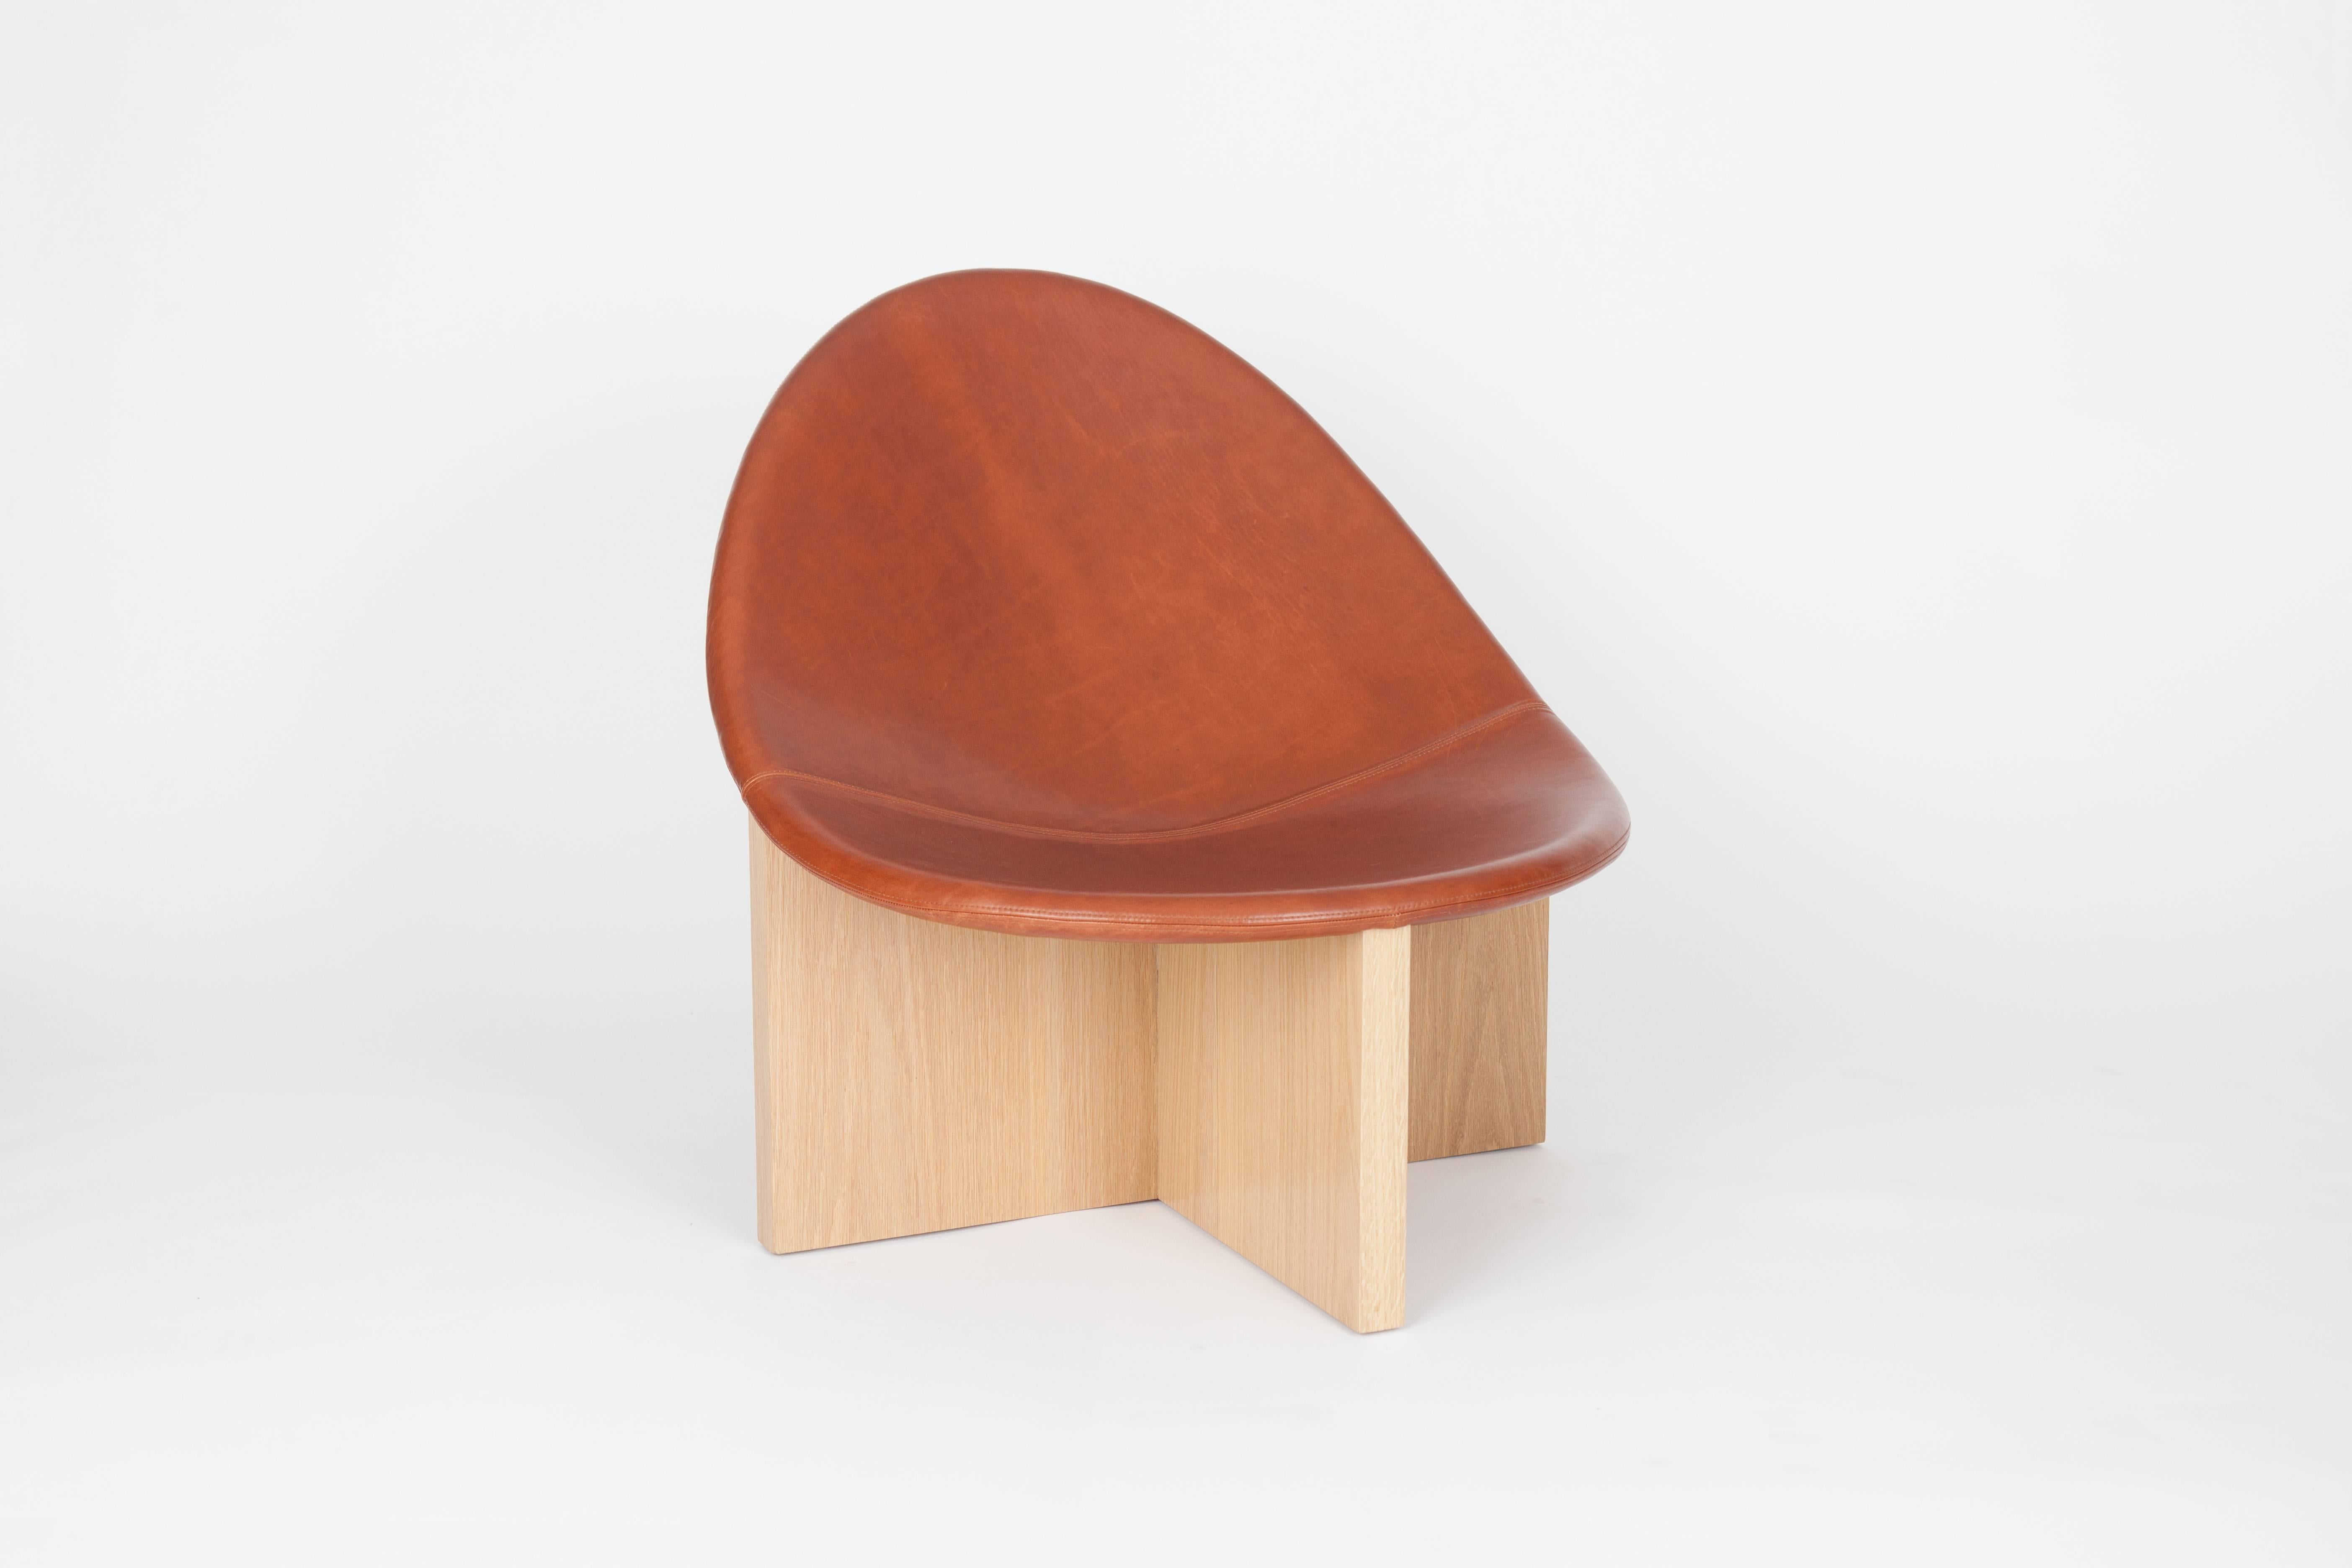 La chaise NIDO est le résultat du jeu de la juxtaposition des formes. La forme ovoïde de l'assise en bois recouverte de cuir qui s'emboîte dans le cadre en bois massif en forme de croix lui donne le nom de NIDO, qui signifie nid en espagnol. Les